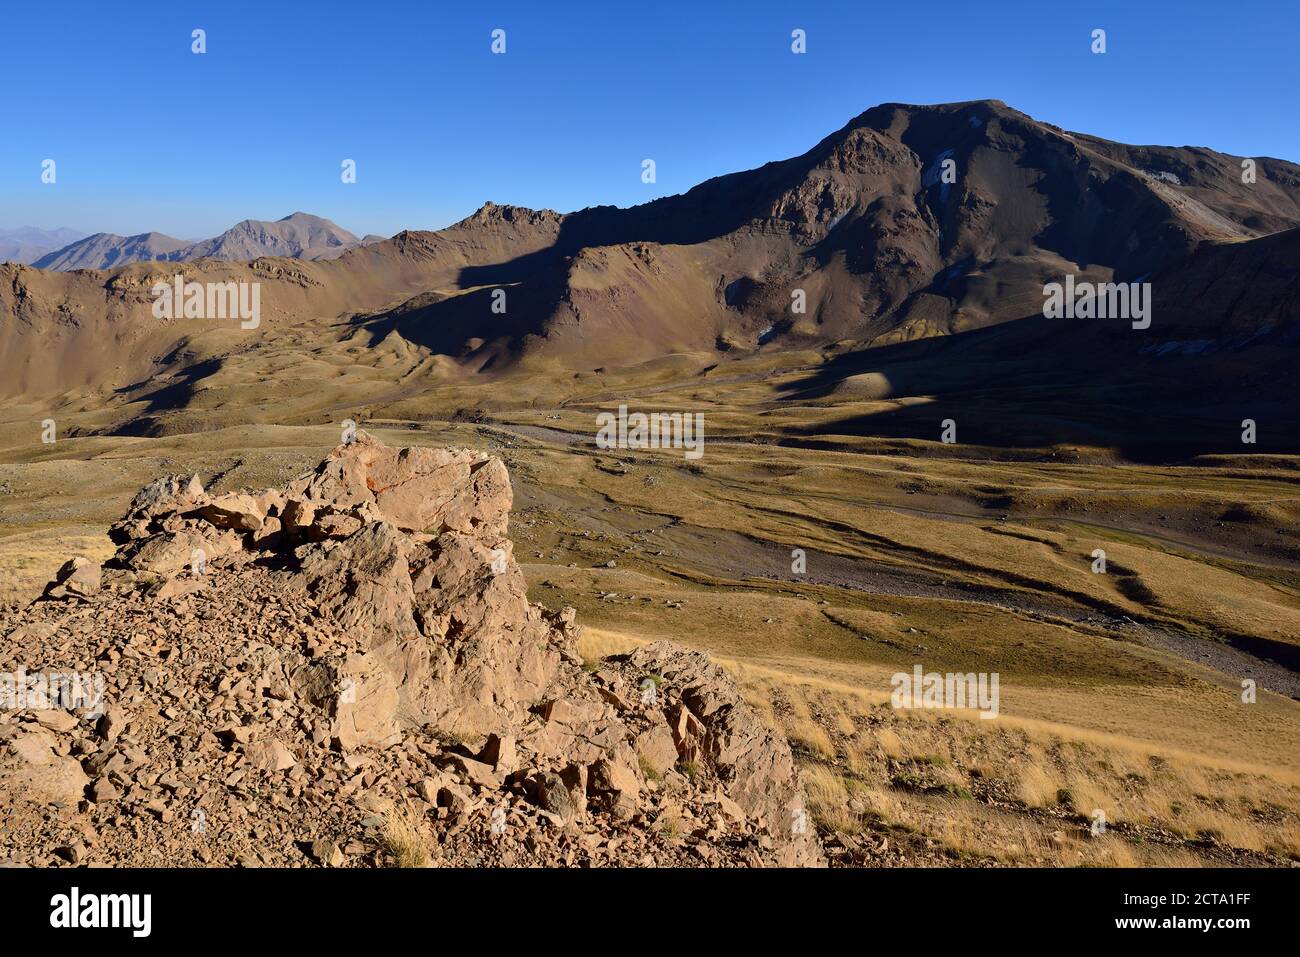 Iran, View of Alborz mountains Stock Photo